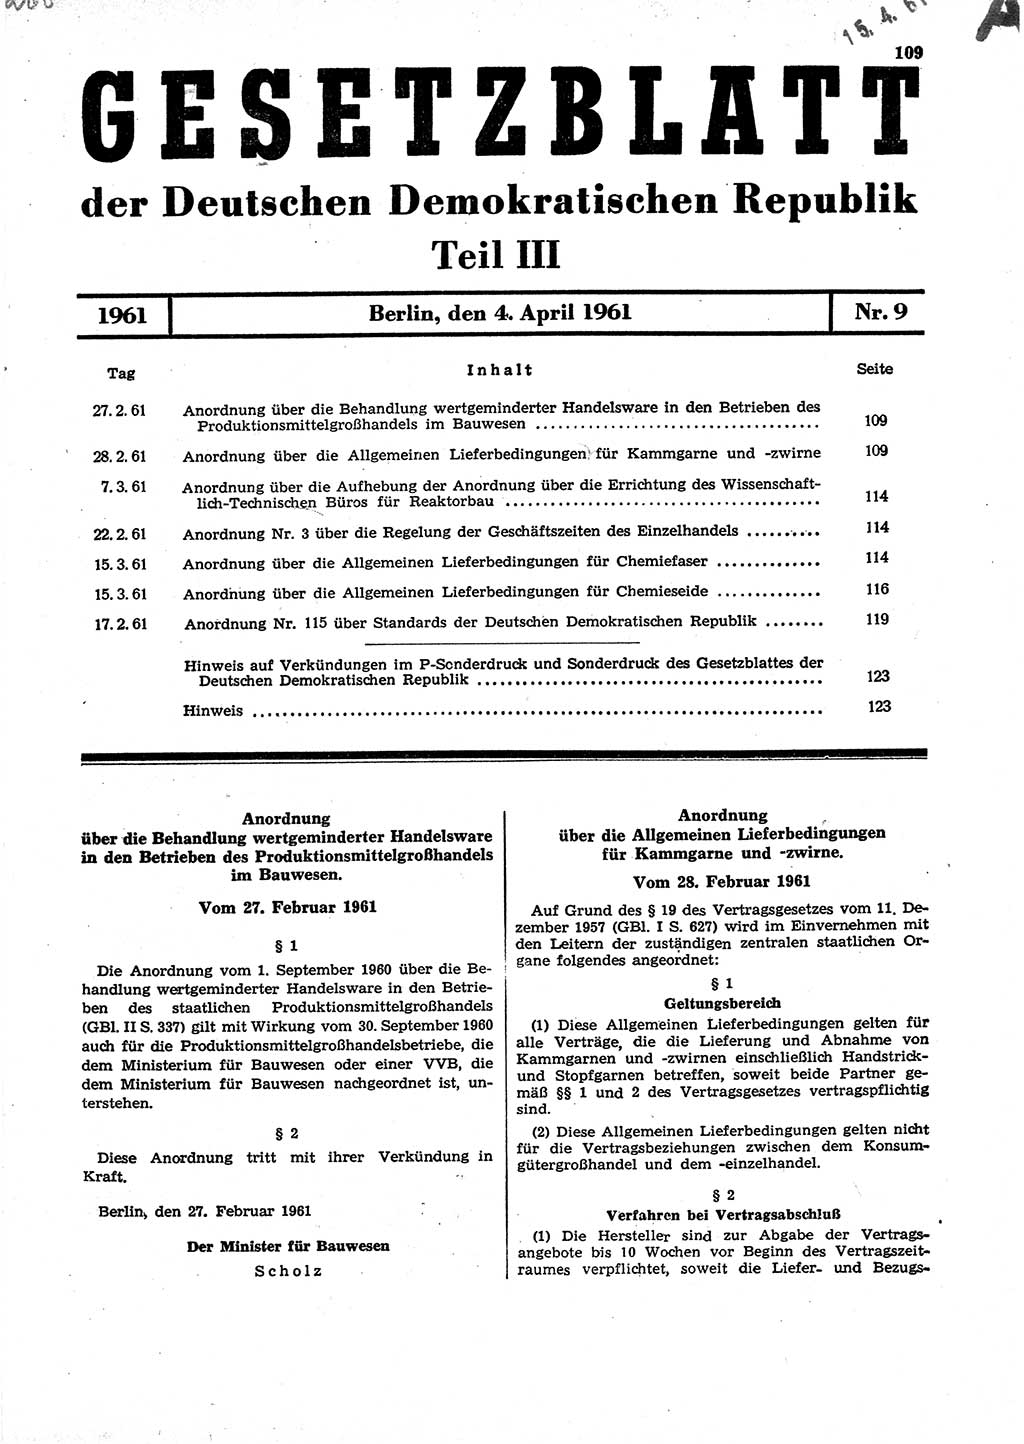 Gesetzblatt (GBl.) der Deutschen Demokratischen Republik (DDR) Teil ⅠⅠⅠ 1961, Seite 109 (GBl. DDR ⅠⅠⅠ 1961, S. 109)